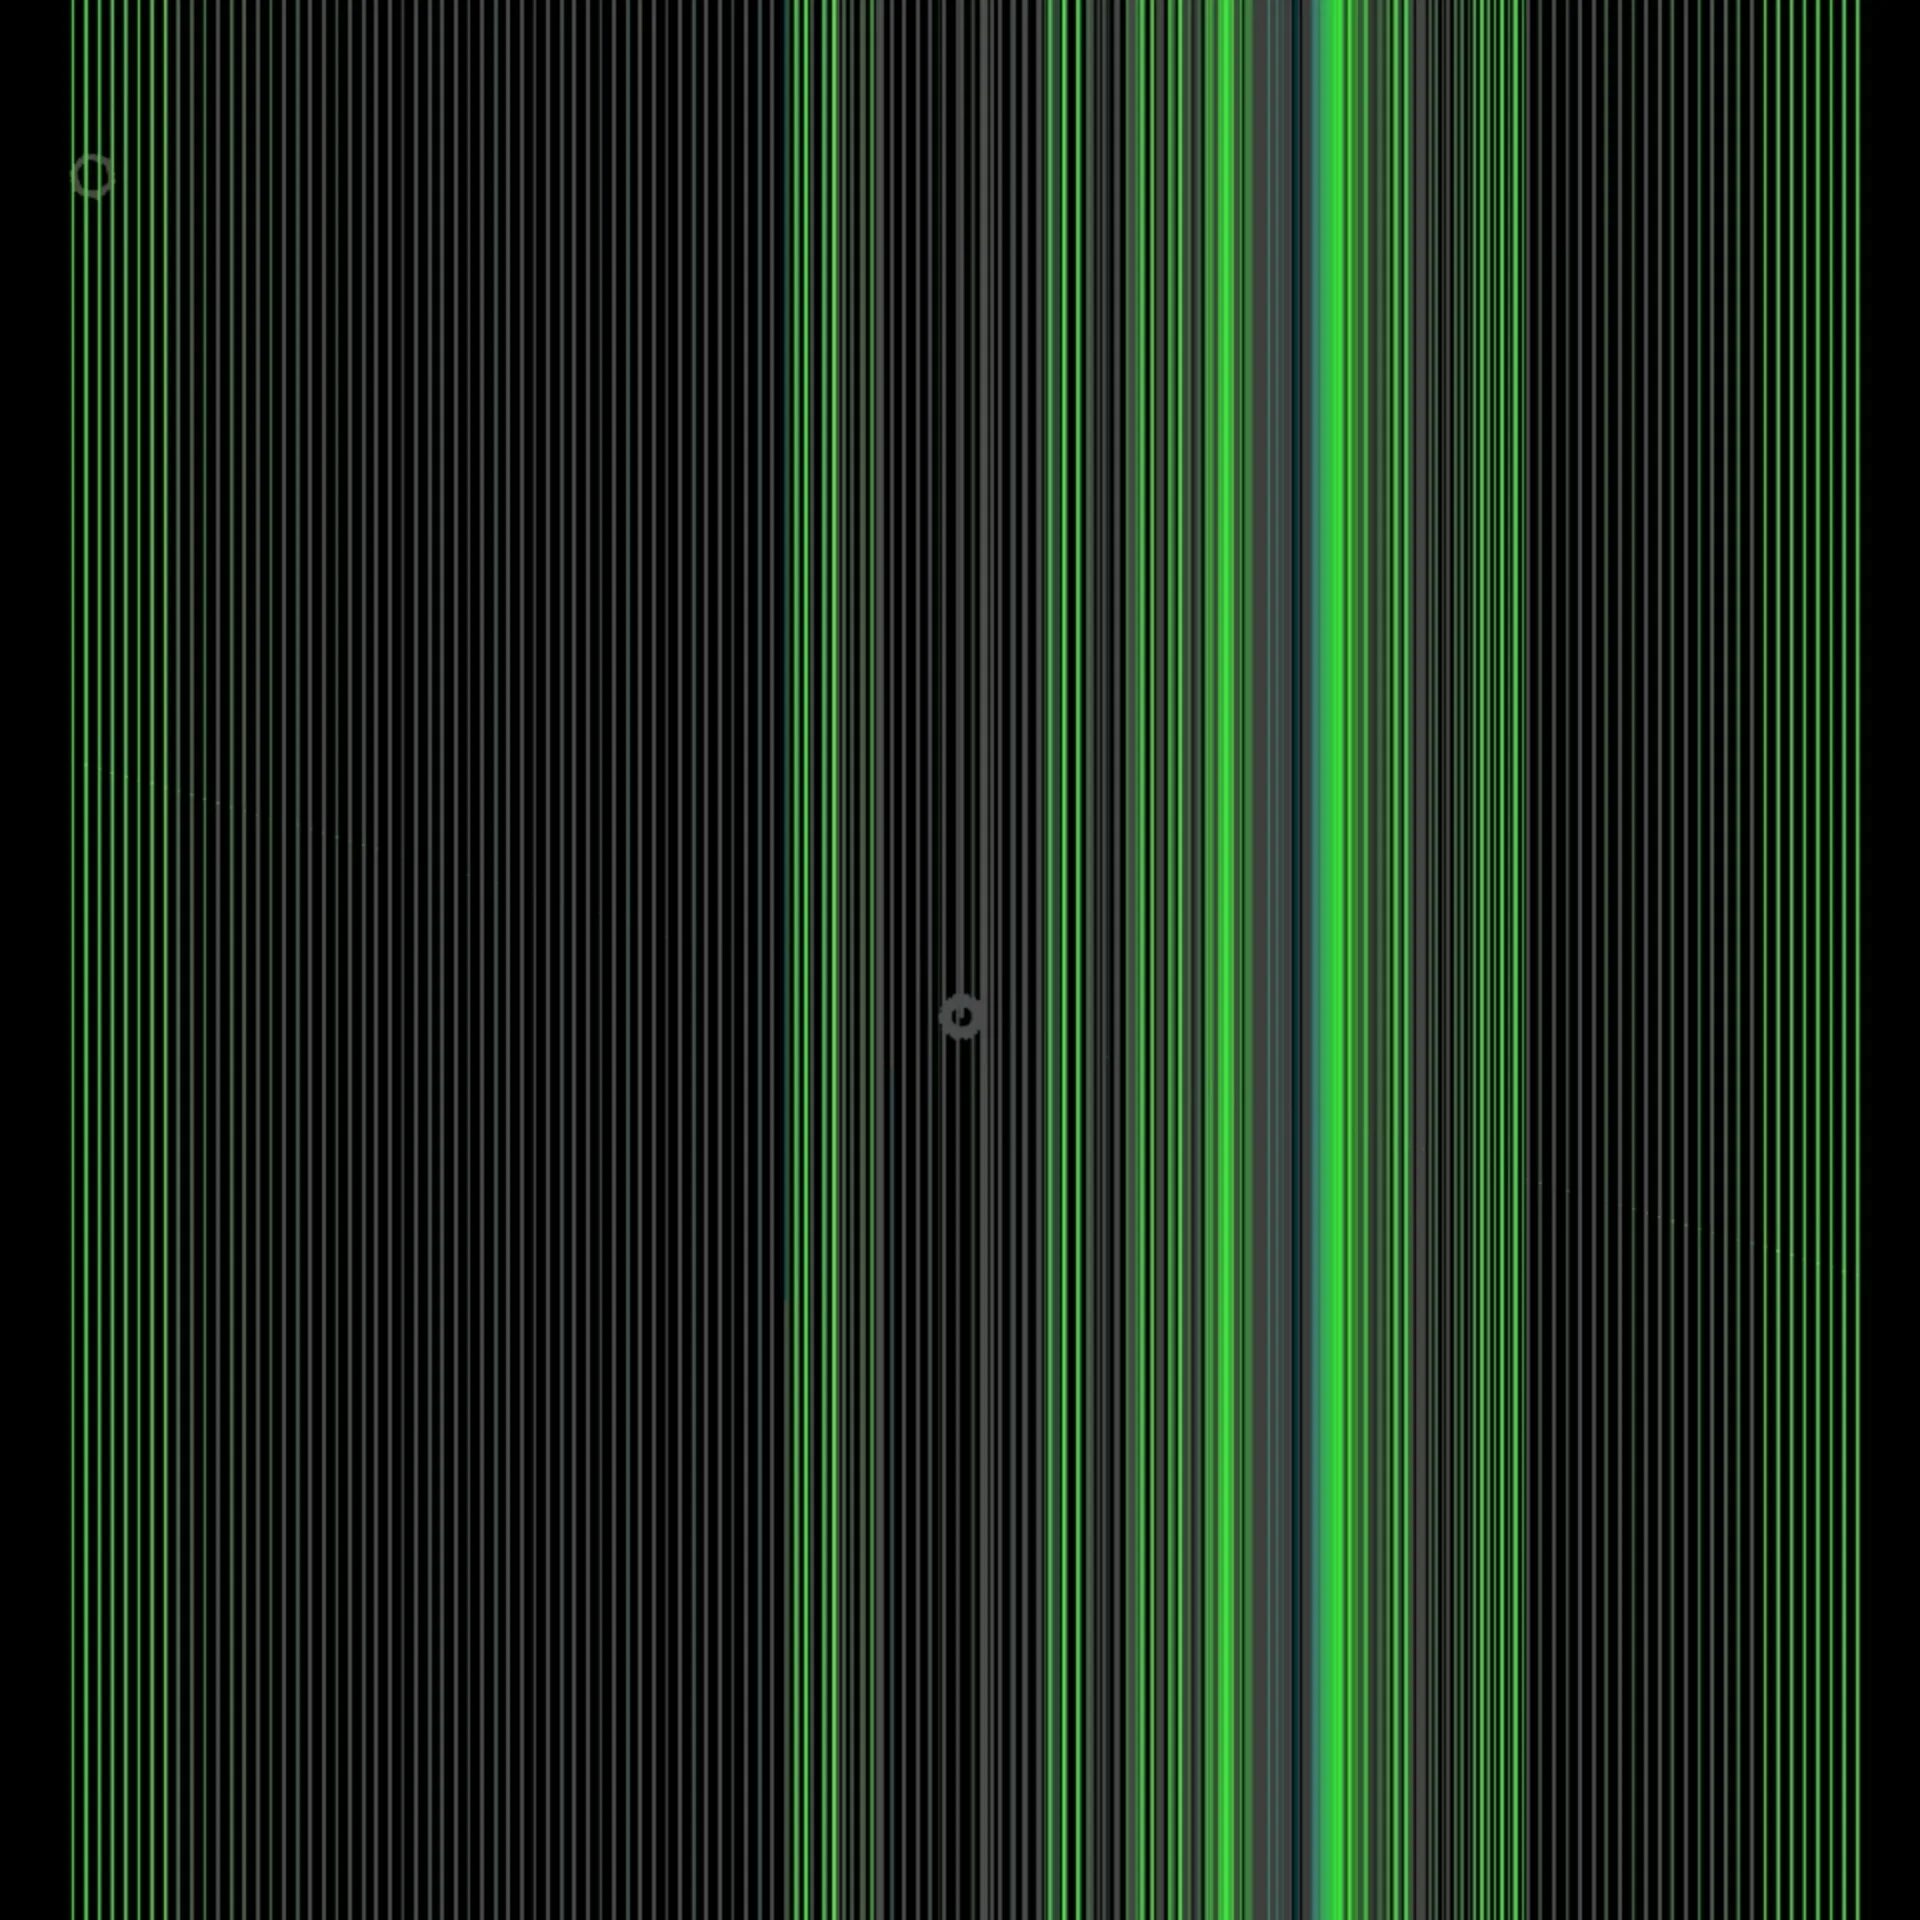 На экране черные вертикальные полосы. Вертикальные полосы. Зеленая полоска. Вертикальные полоски. Зеленая полоса вертикальная.